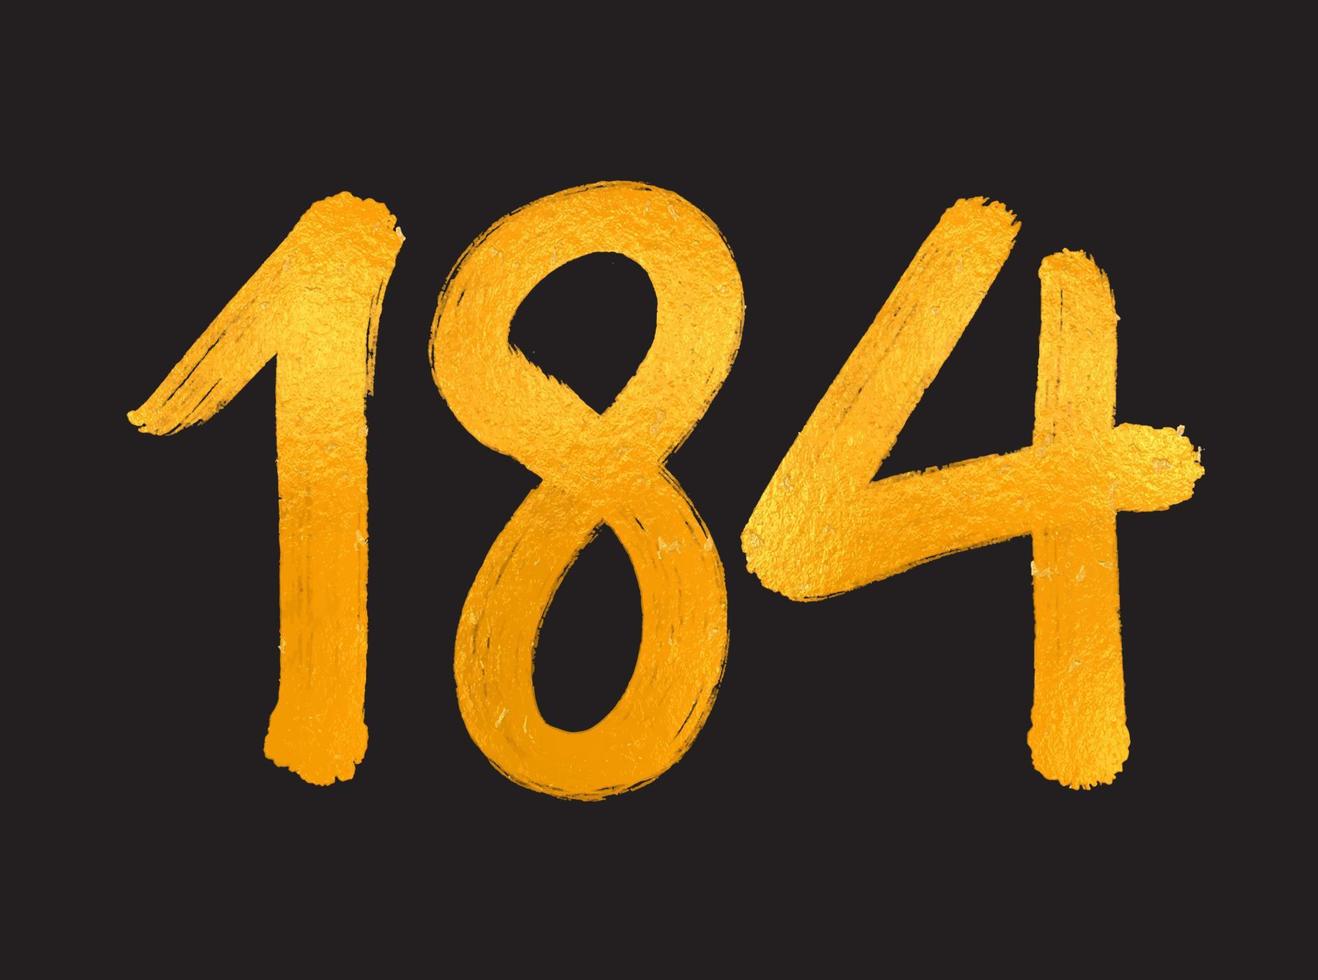 184-Nummer-Logo-Vektorillustration, 184-jähriges Jubiläumsfeier-Vektorvorlage, 184. Geburtstag, Goldbeschriftung Zahlen Pinselzeichnung handgezeichnete Skizze, Nummer-Logo-Design für Druck, T-Shirt vektor